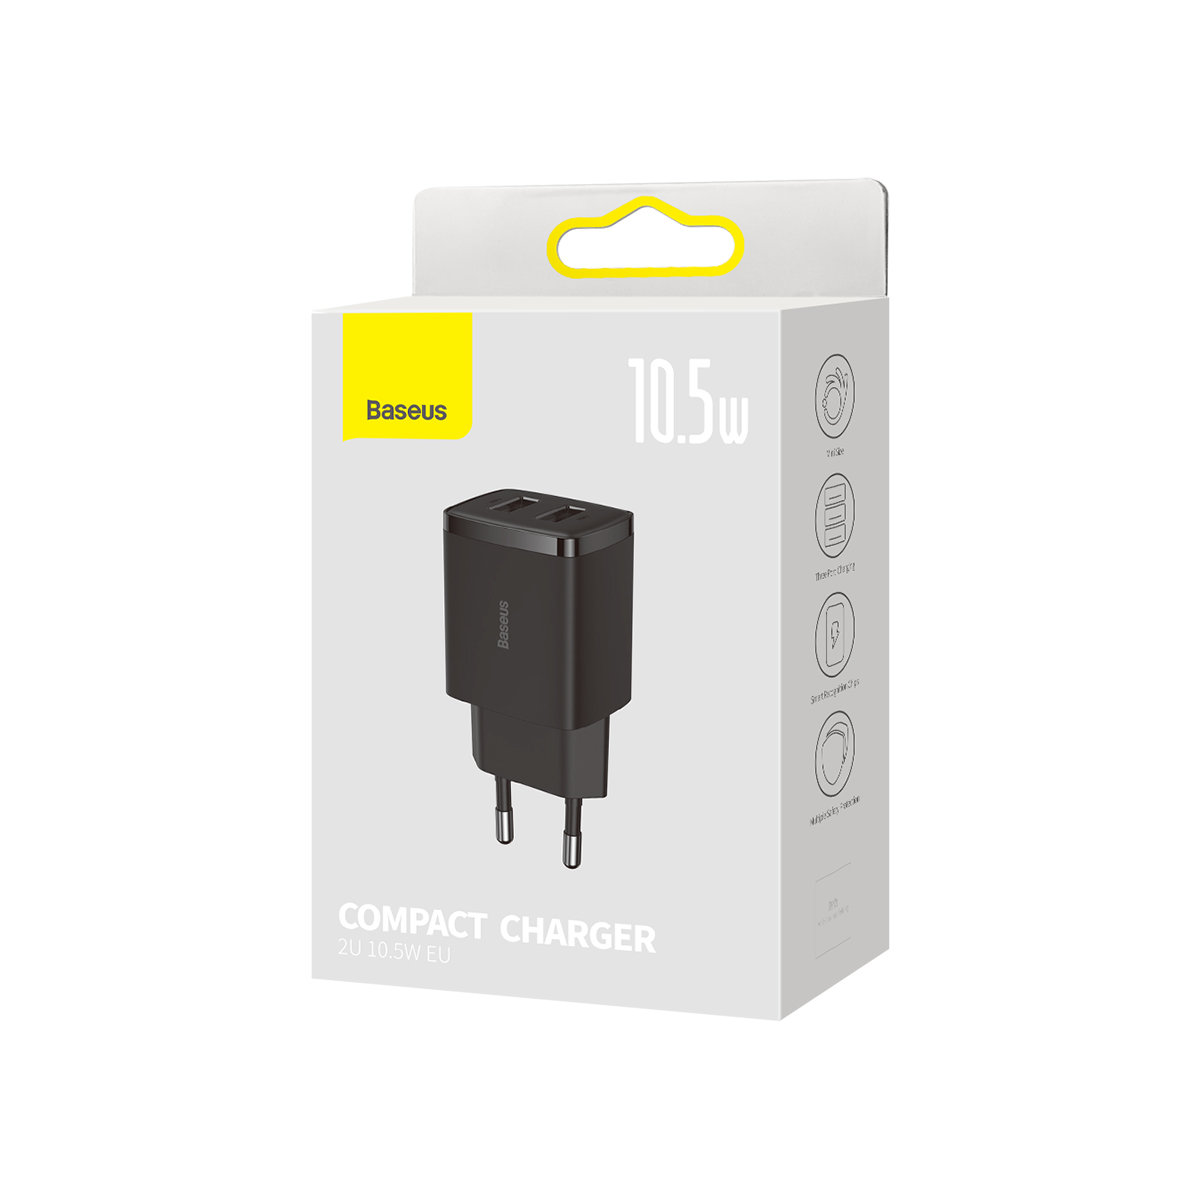 adowarka sieciowa Baseus Compact 2x USB 10.5W CCXJ010202 czarna HTC Desire 510 / 4